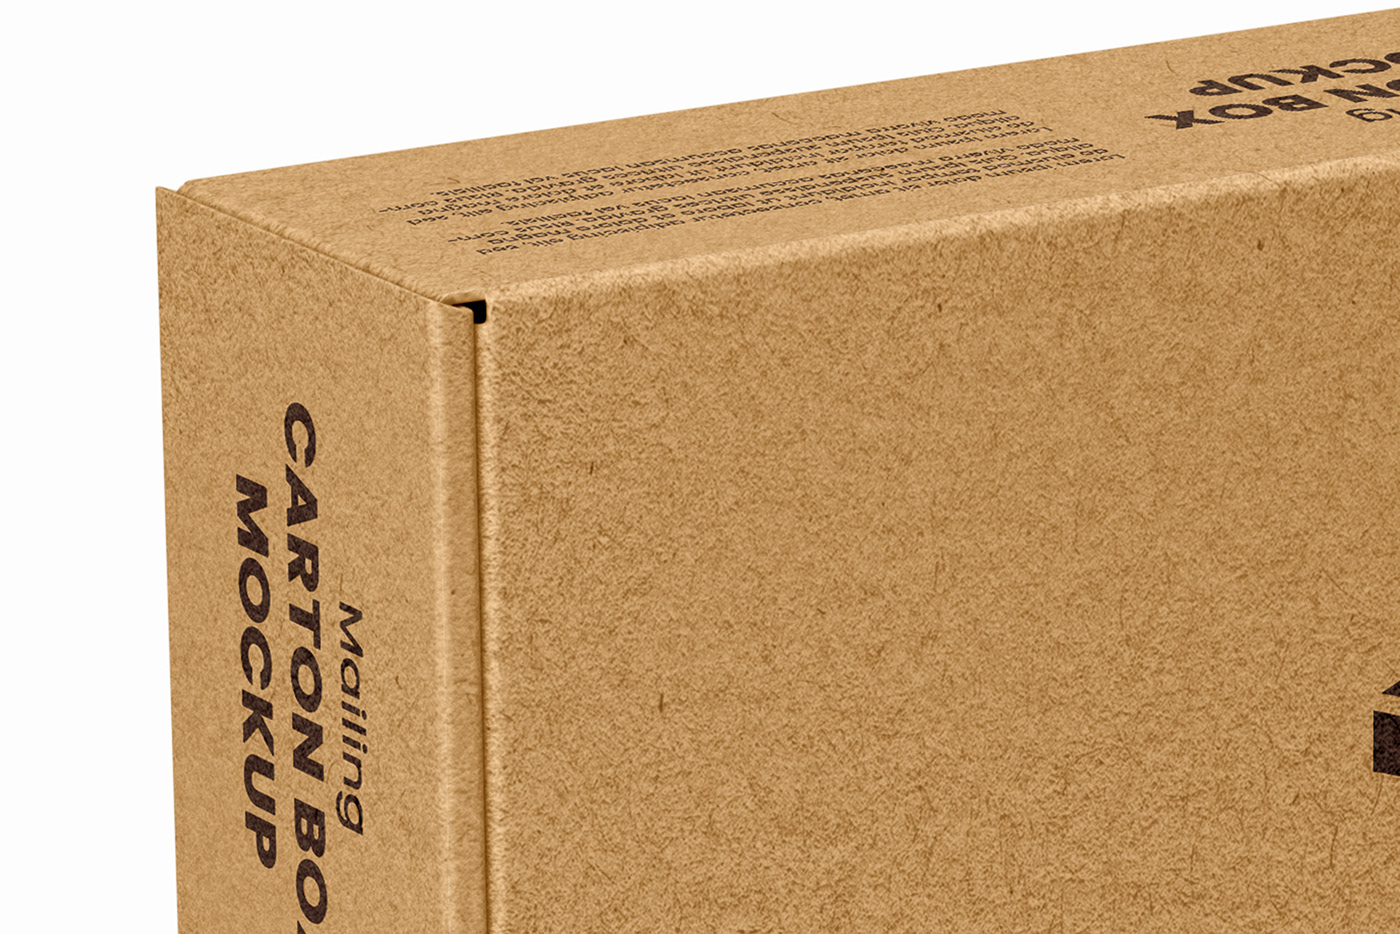 box carton deliver delivery mailing mock-up Mockup post send